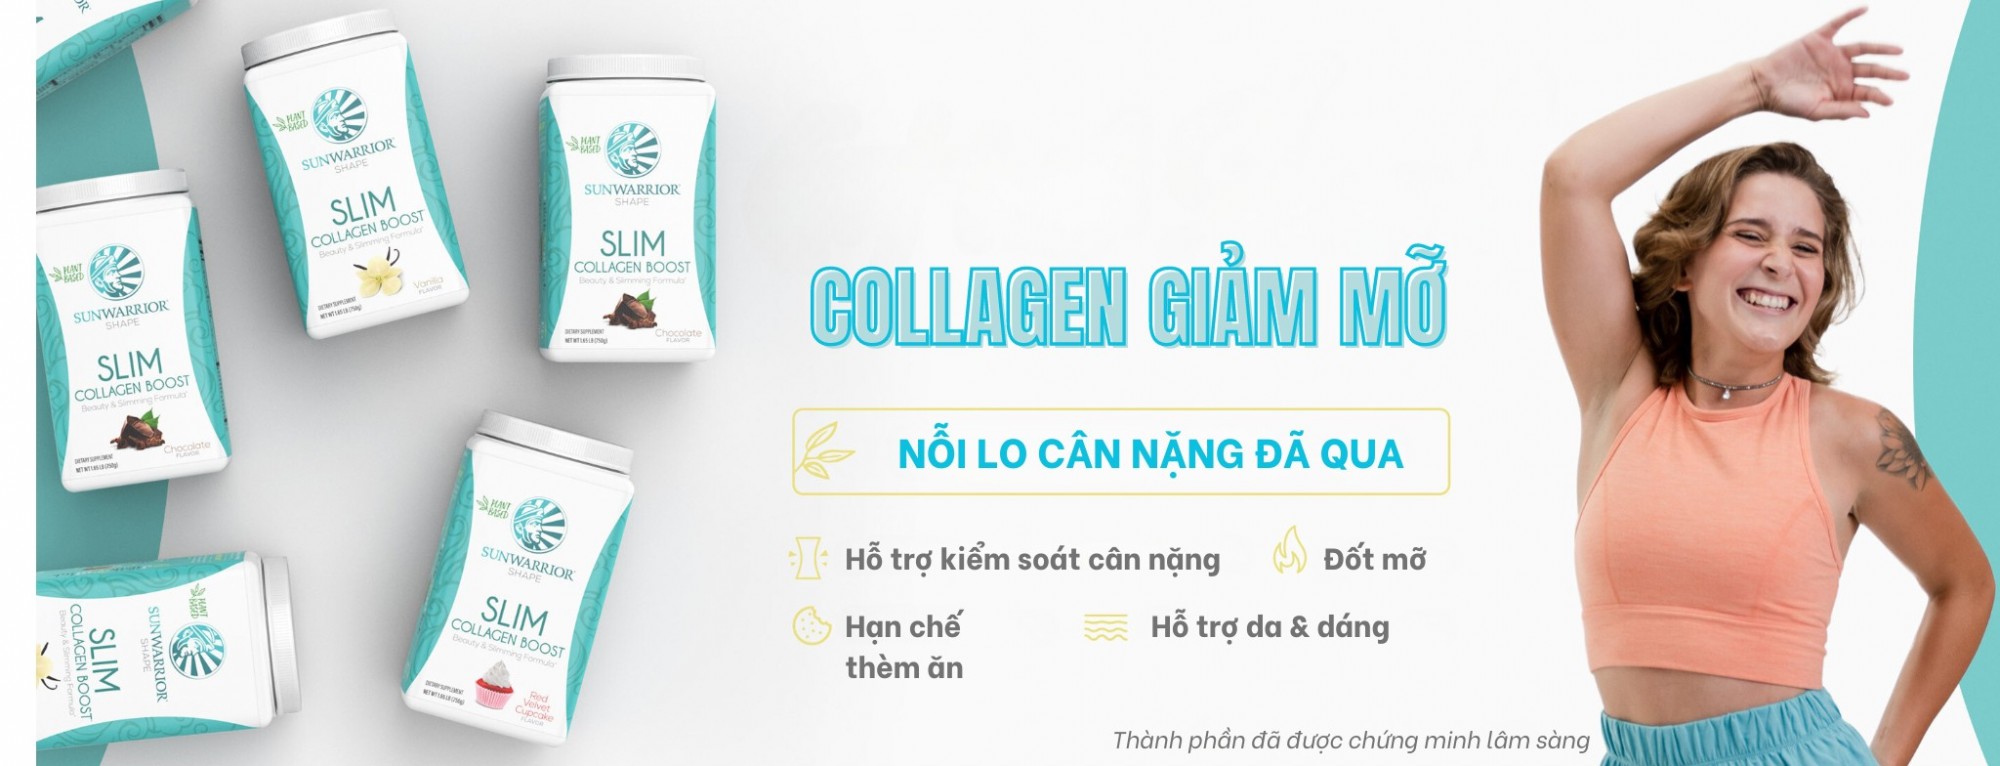 Collagen Slim Sunwarrior